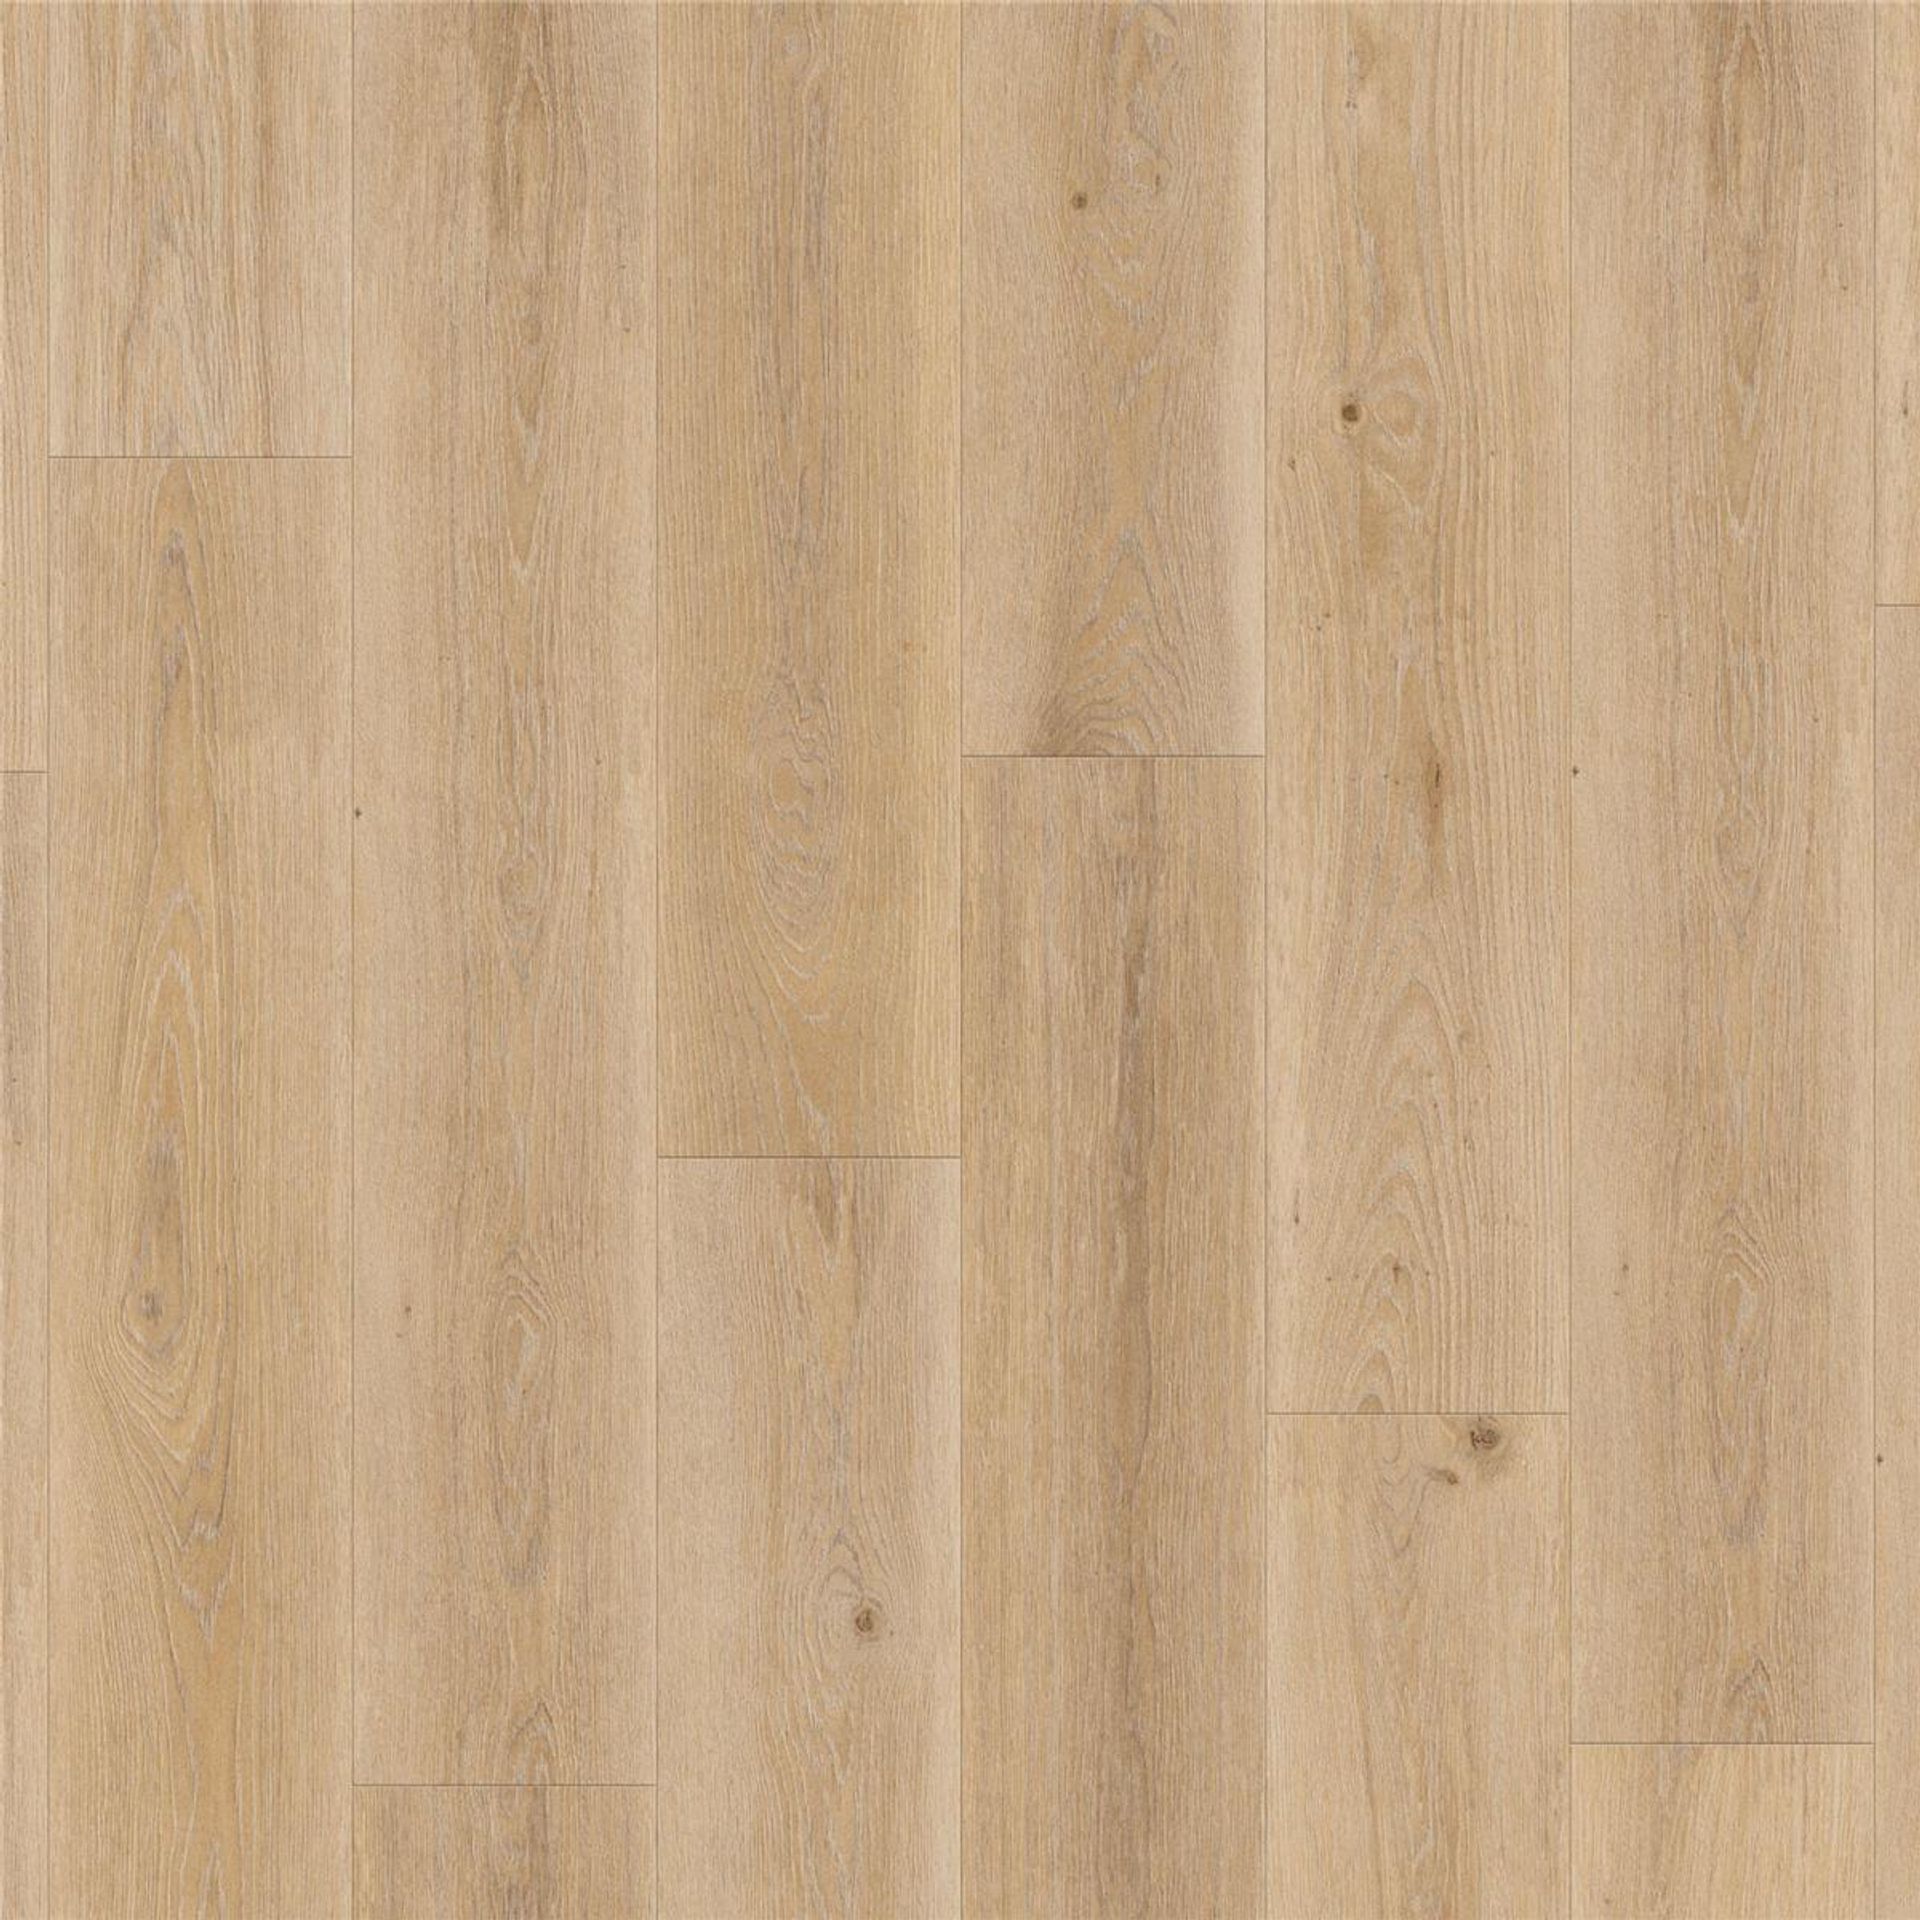 Designboden AUTHENTICS-Highland Oak-Cream Planke 120 cm x 20 cm - Nutzschichtdicke 0,55 mm